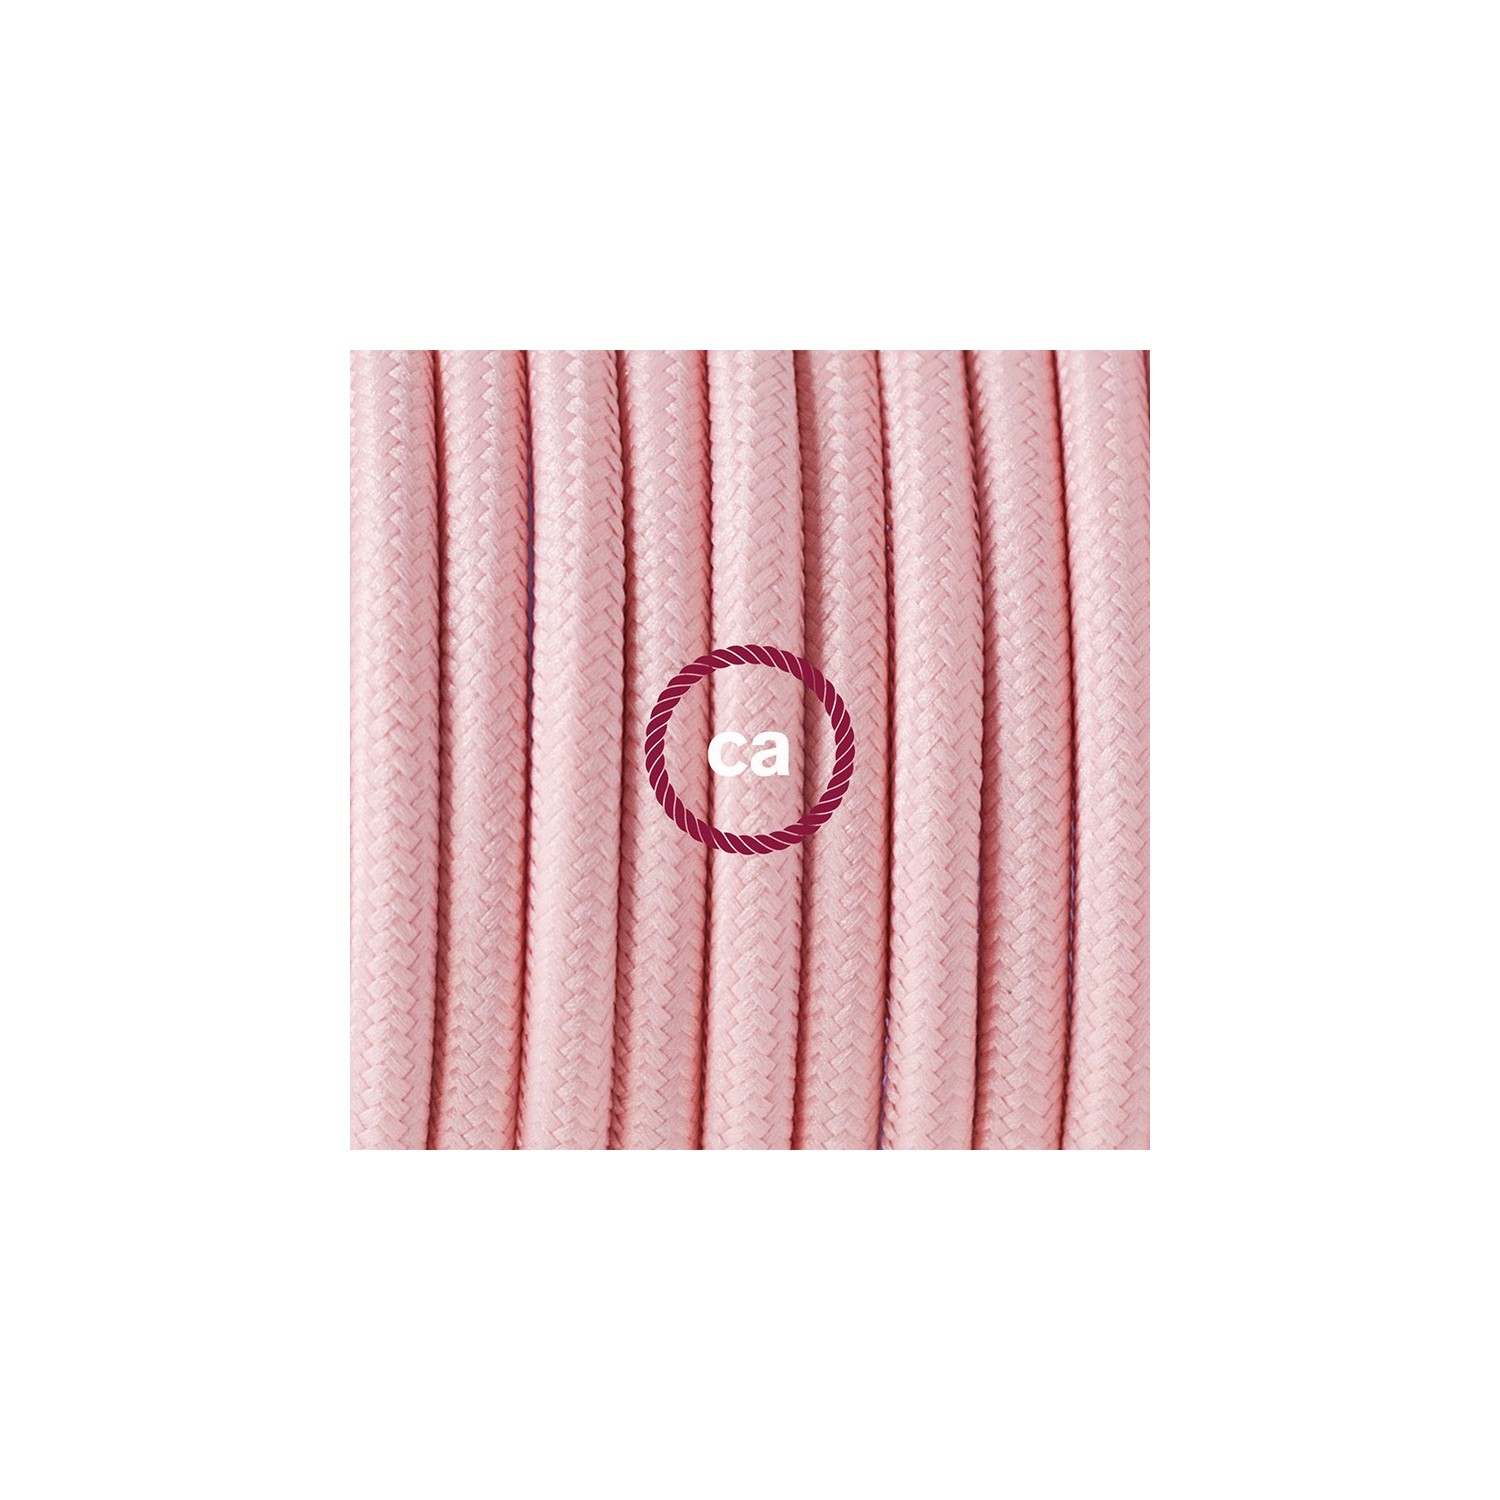 Zuleitung für Tischleuchten RM16 Babyrosa Seideneffekt 1,80 m. Wählen Sie aus drei Farben bei Schalter und Stecke.